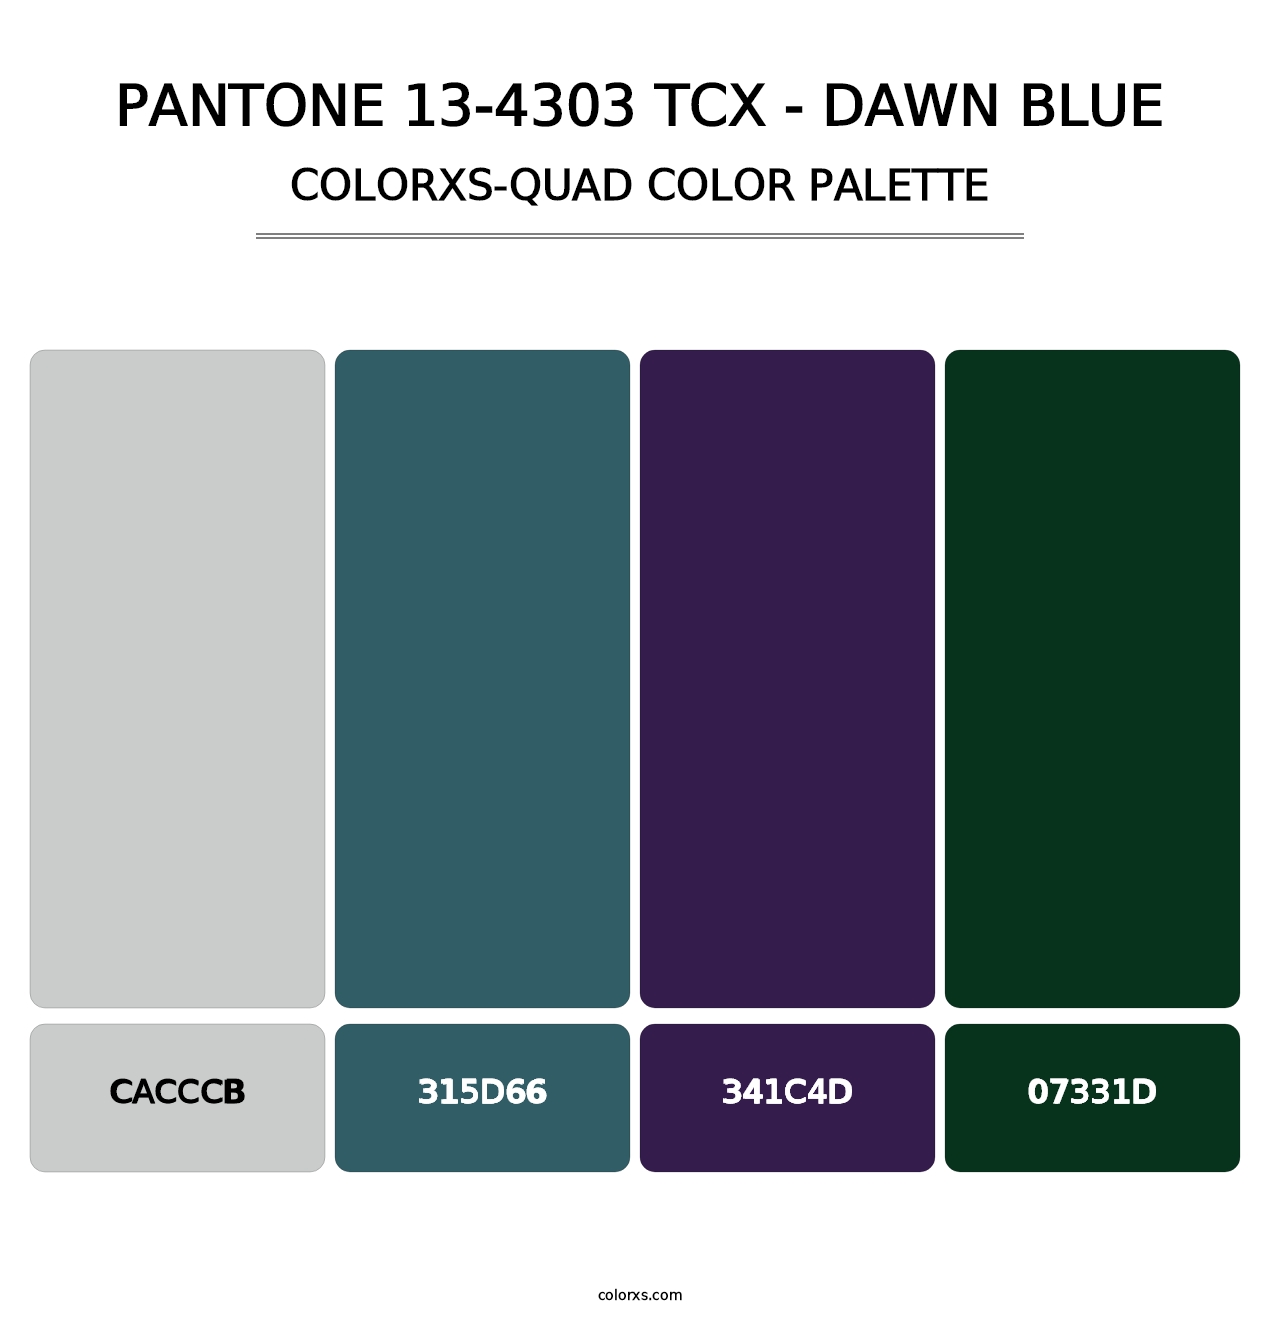 PANTONE 13-4303 TCX - Dawn Blue - Colorxs Quad Palette